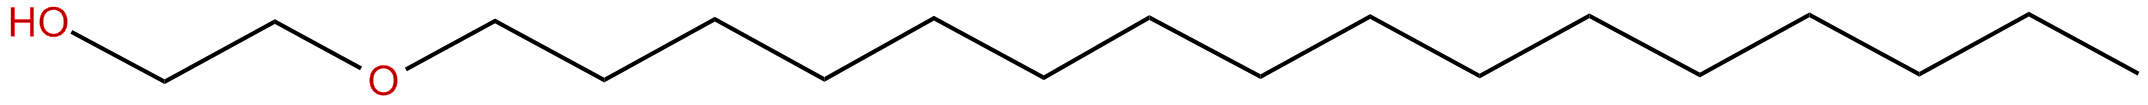 Image of 2-(hexadecyloxy)ethanol